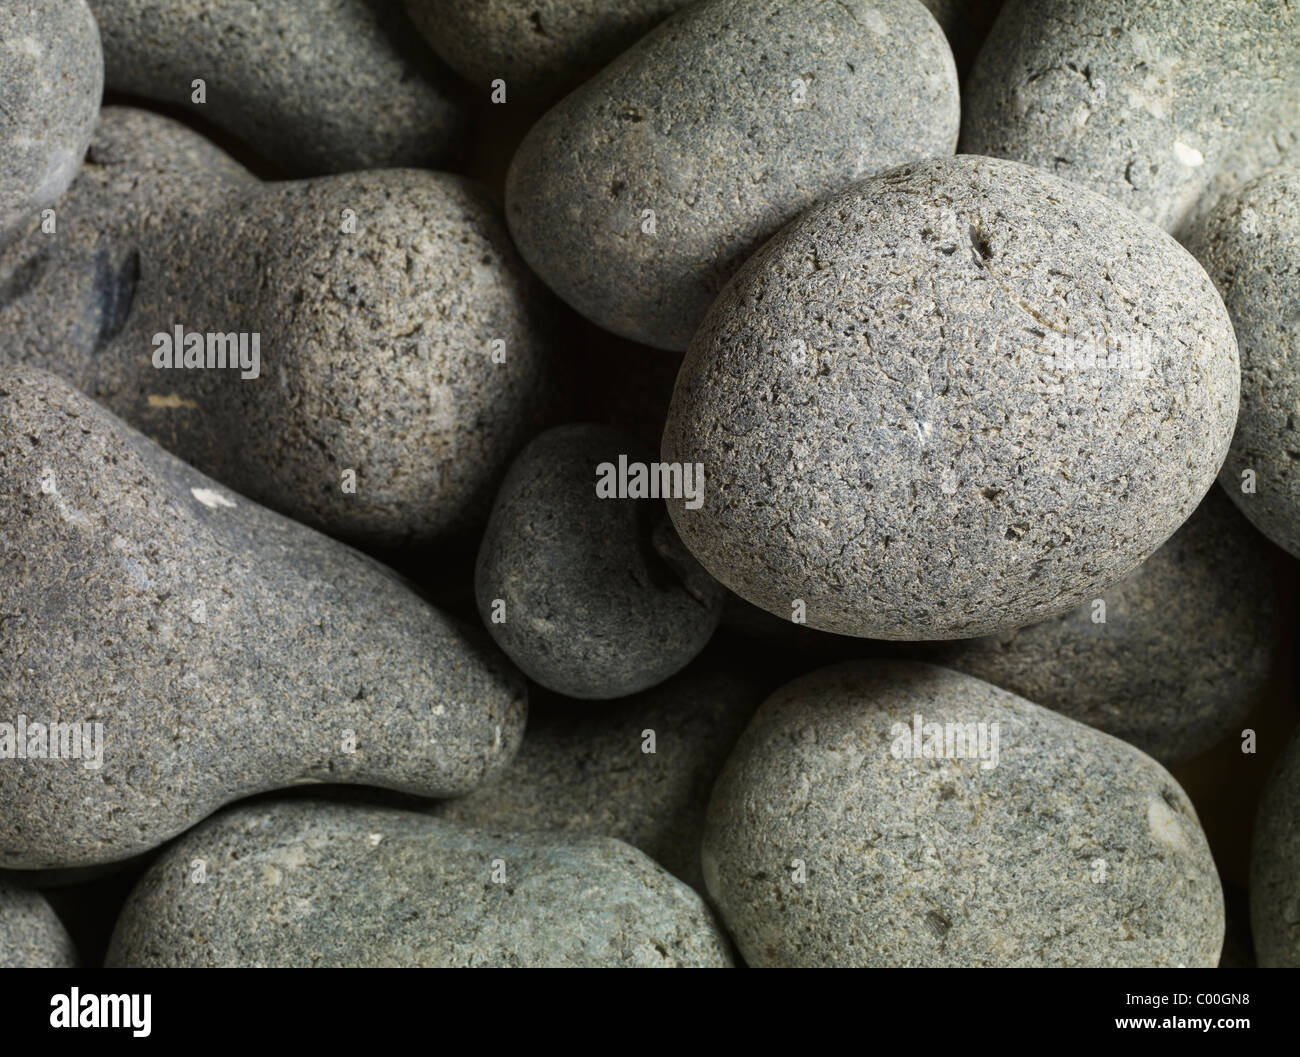 Granitkiesel, rund und glatt, bilden einen abstrakten Hintergrund Stockfoto